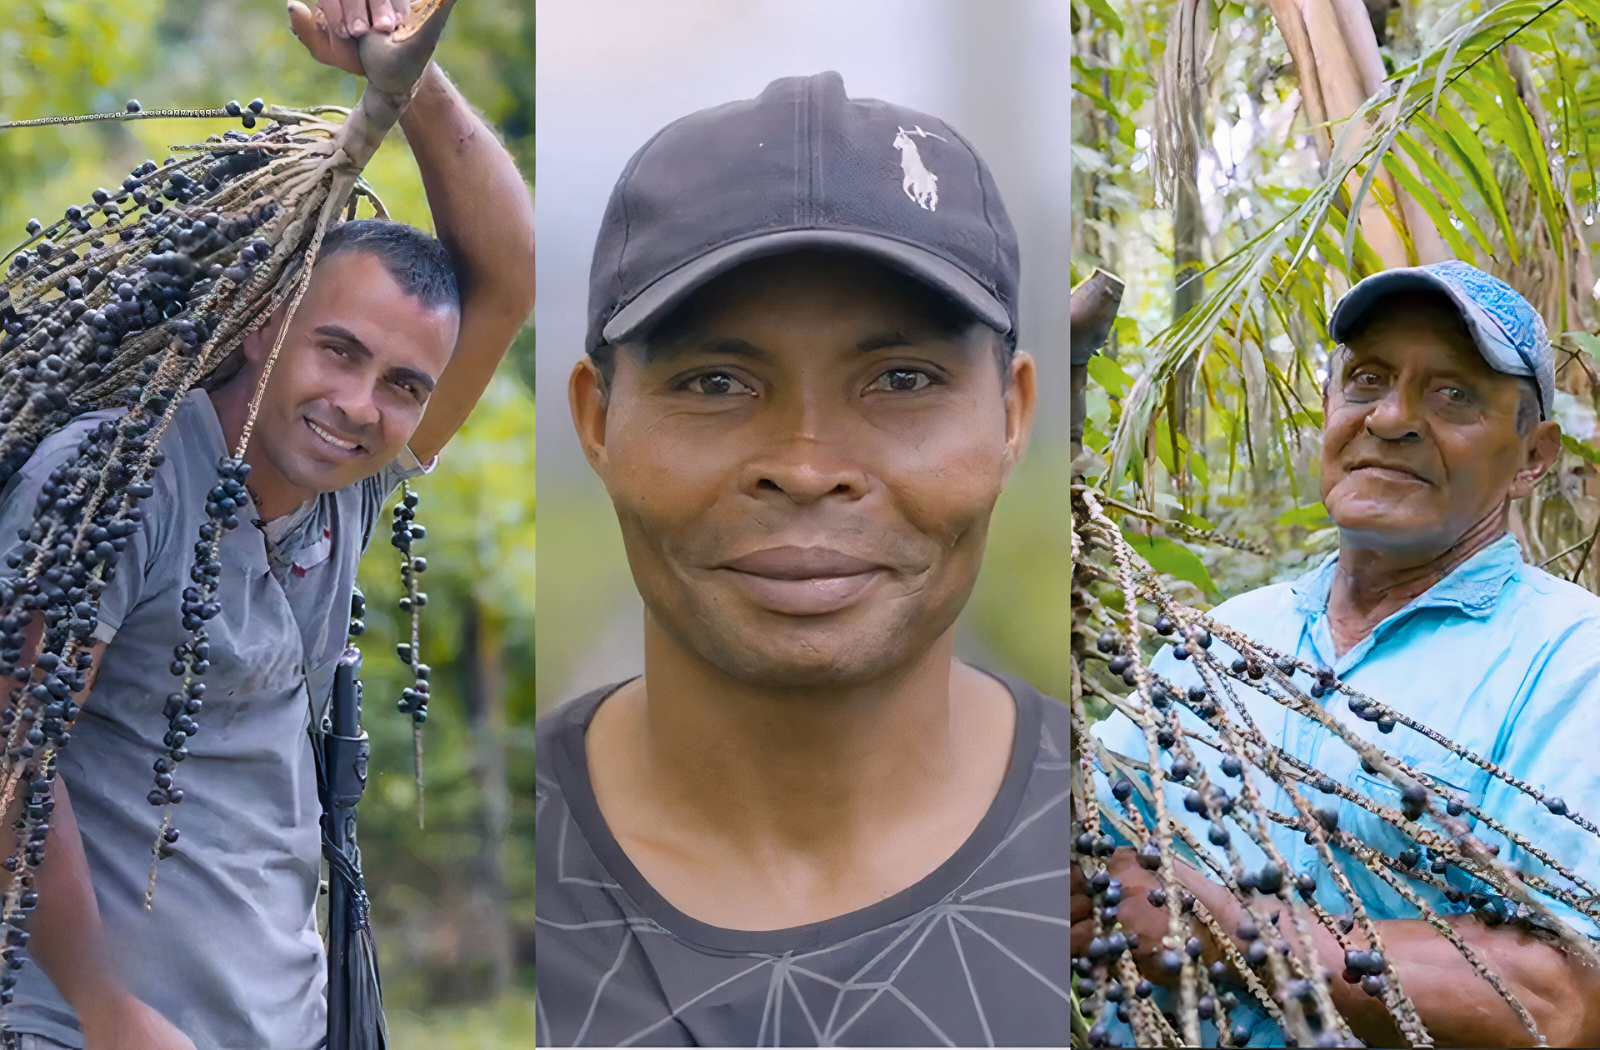 Die Acai-Beeren stiften Hoffnung für die Menschen in Kolumbien